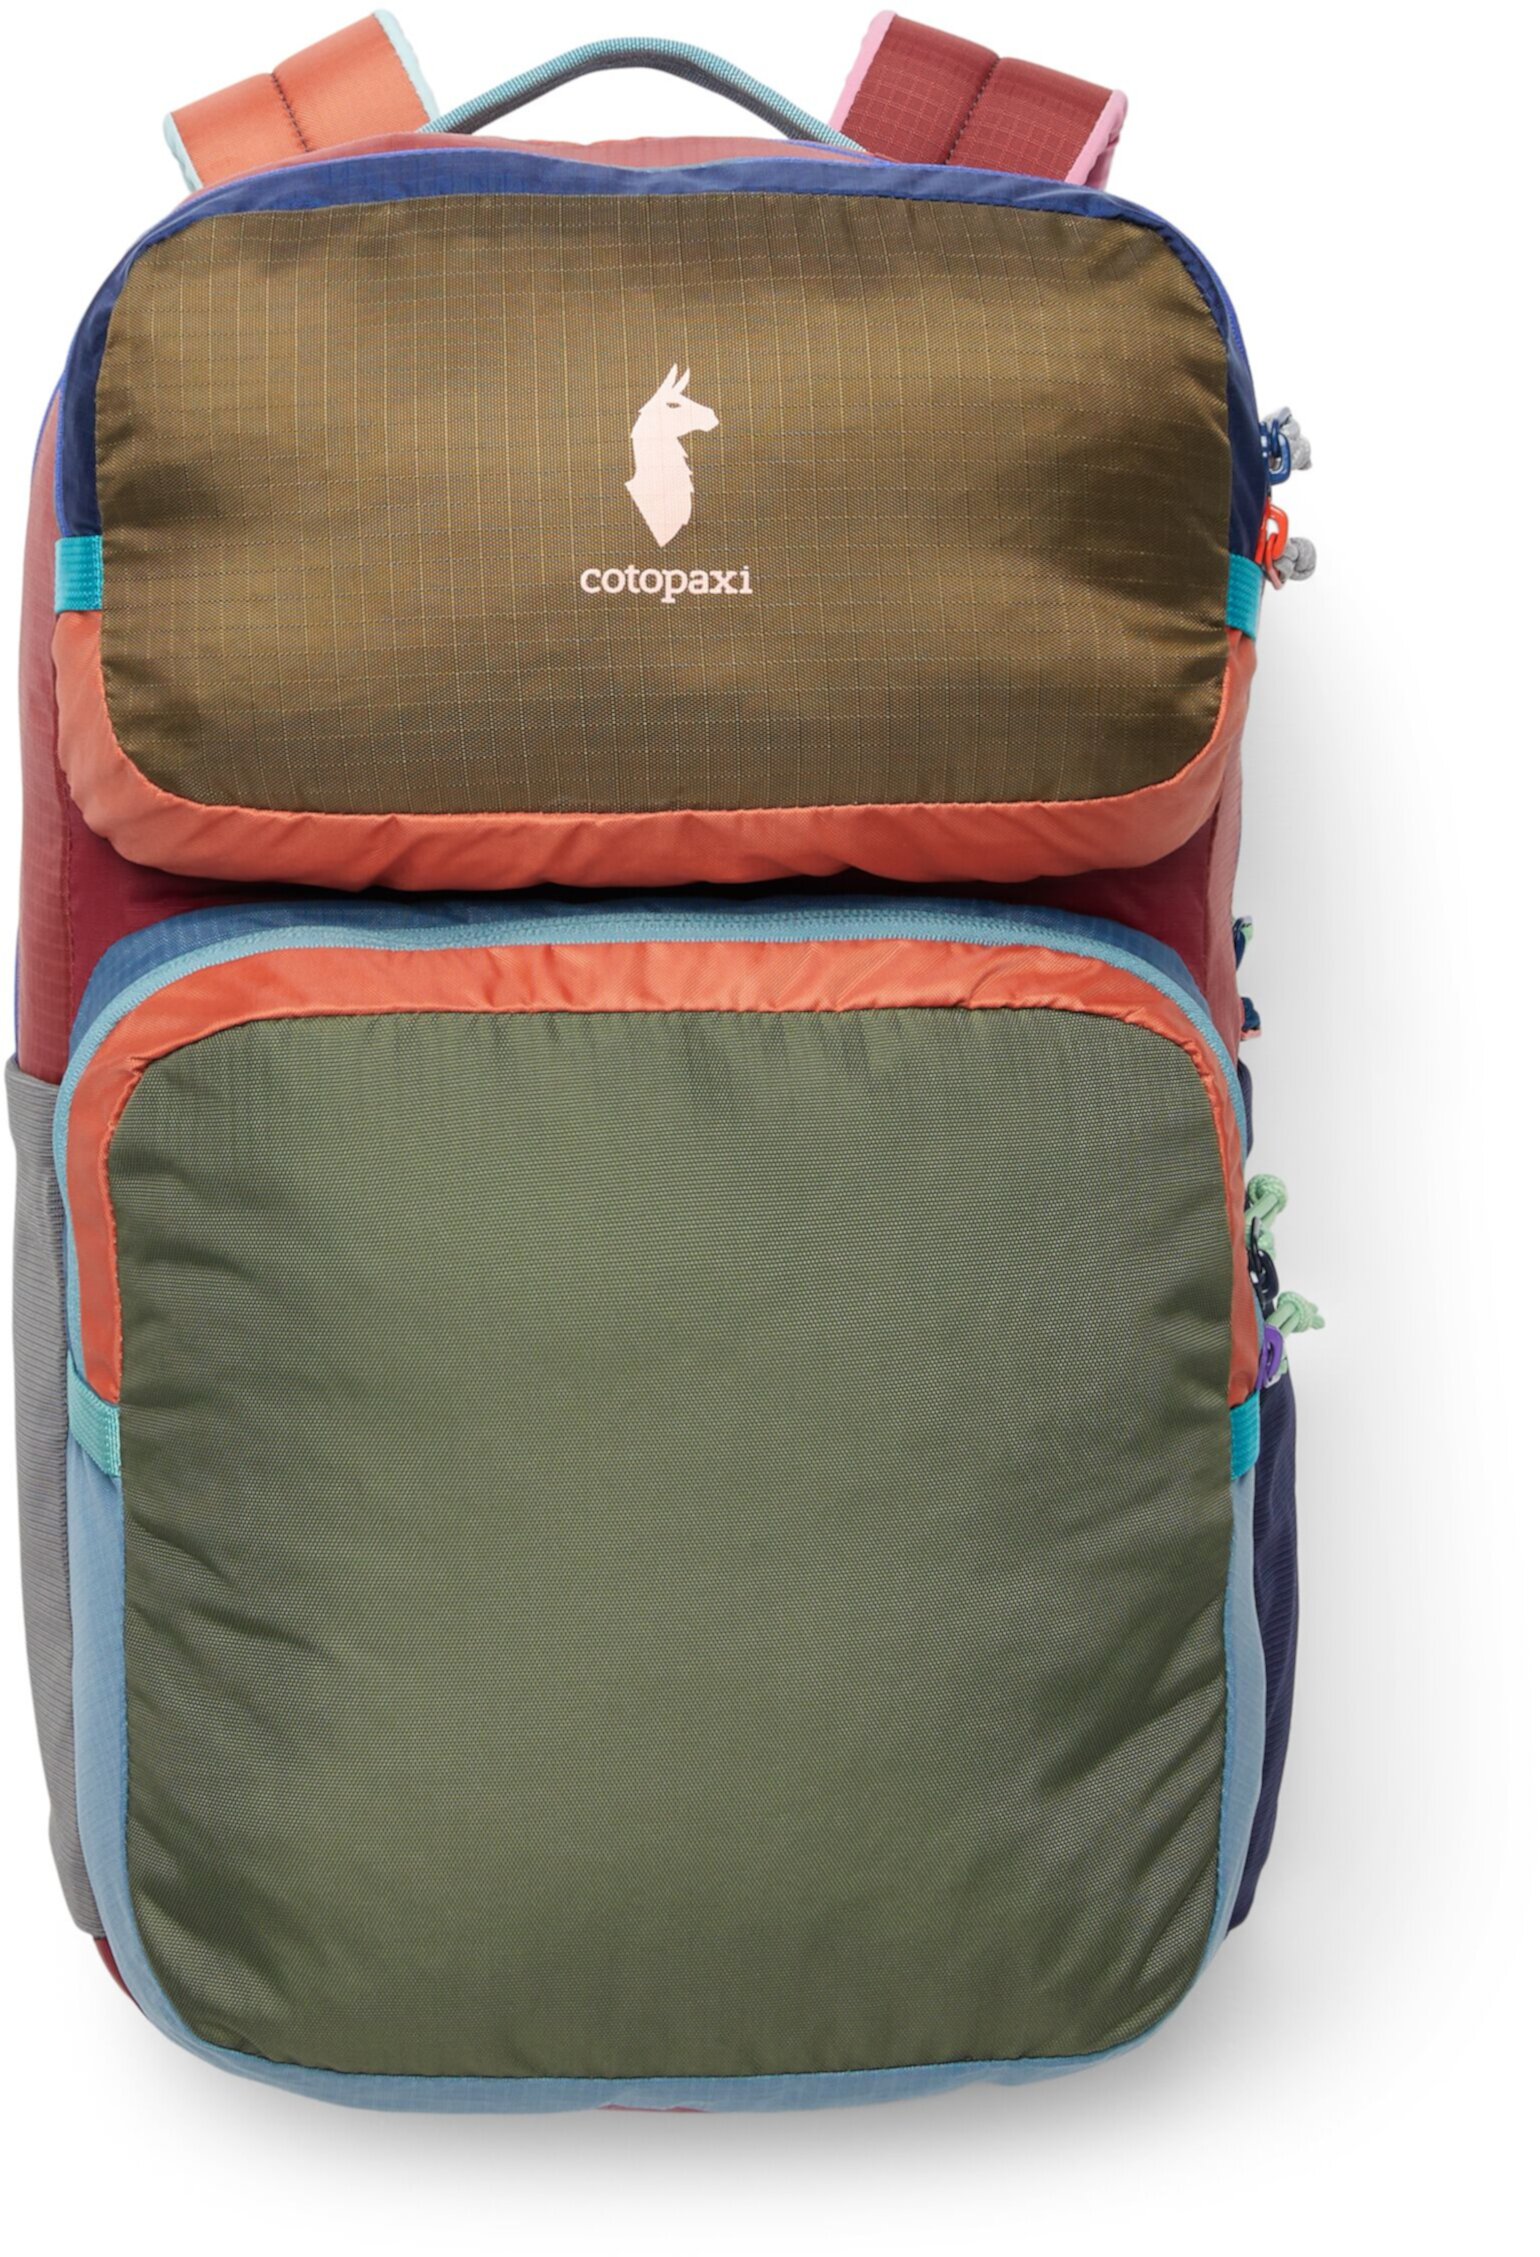 16 L Tasra Backpack - Del Dia Redesign Cotopaxi